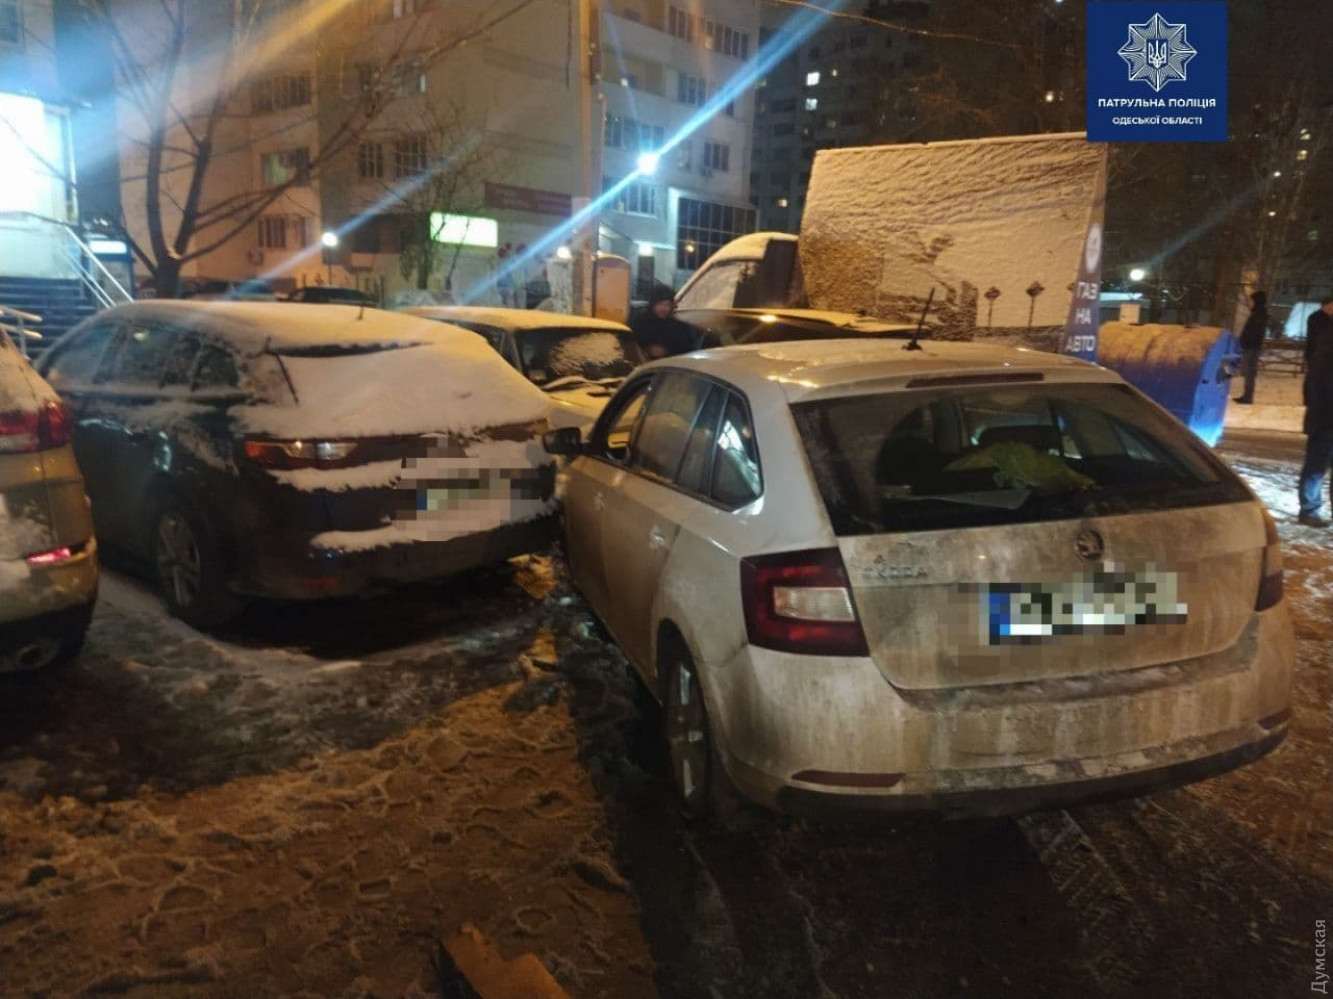 П'яний водій в Одесі спотворив сім автомобілів - ФОТО — фото 1